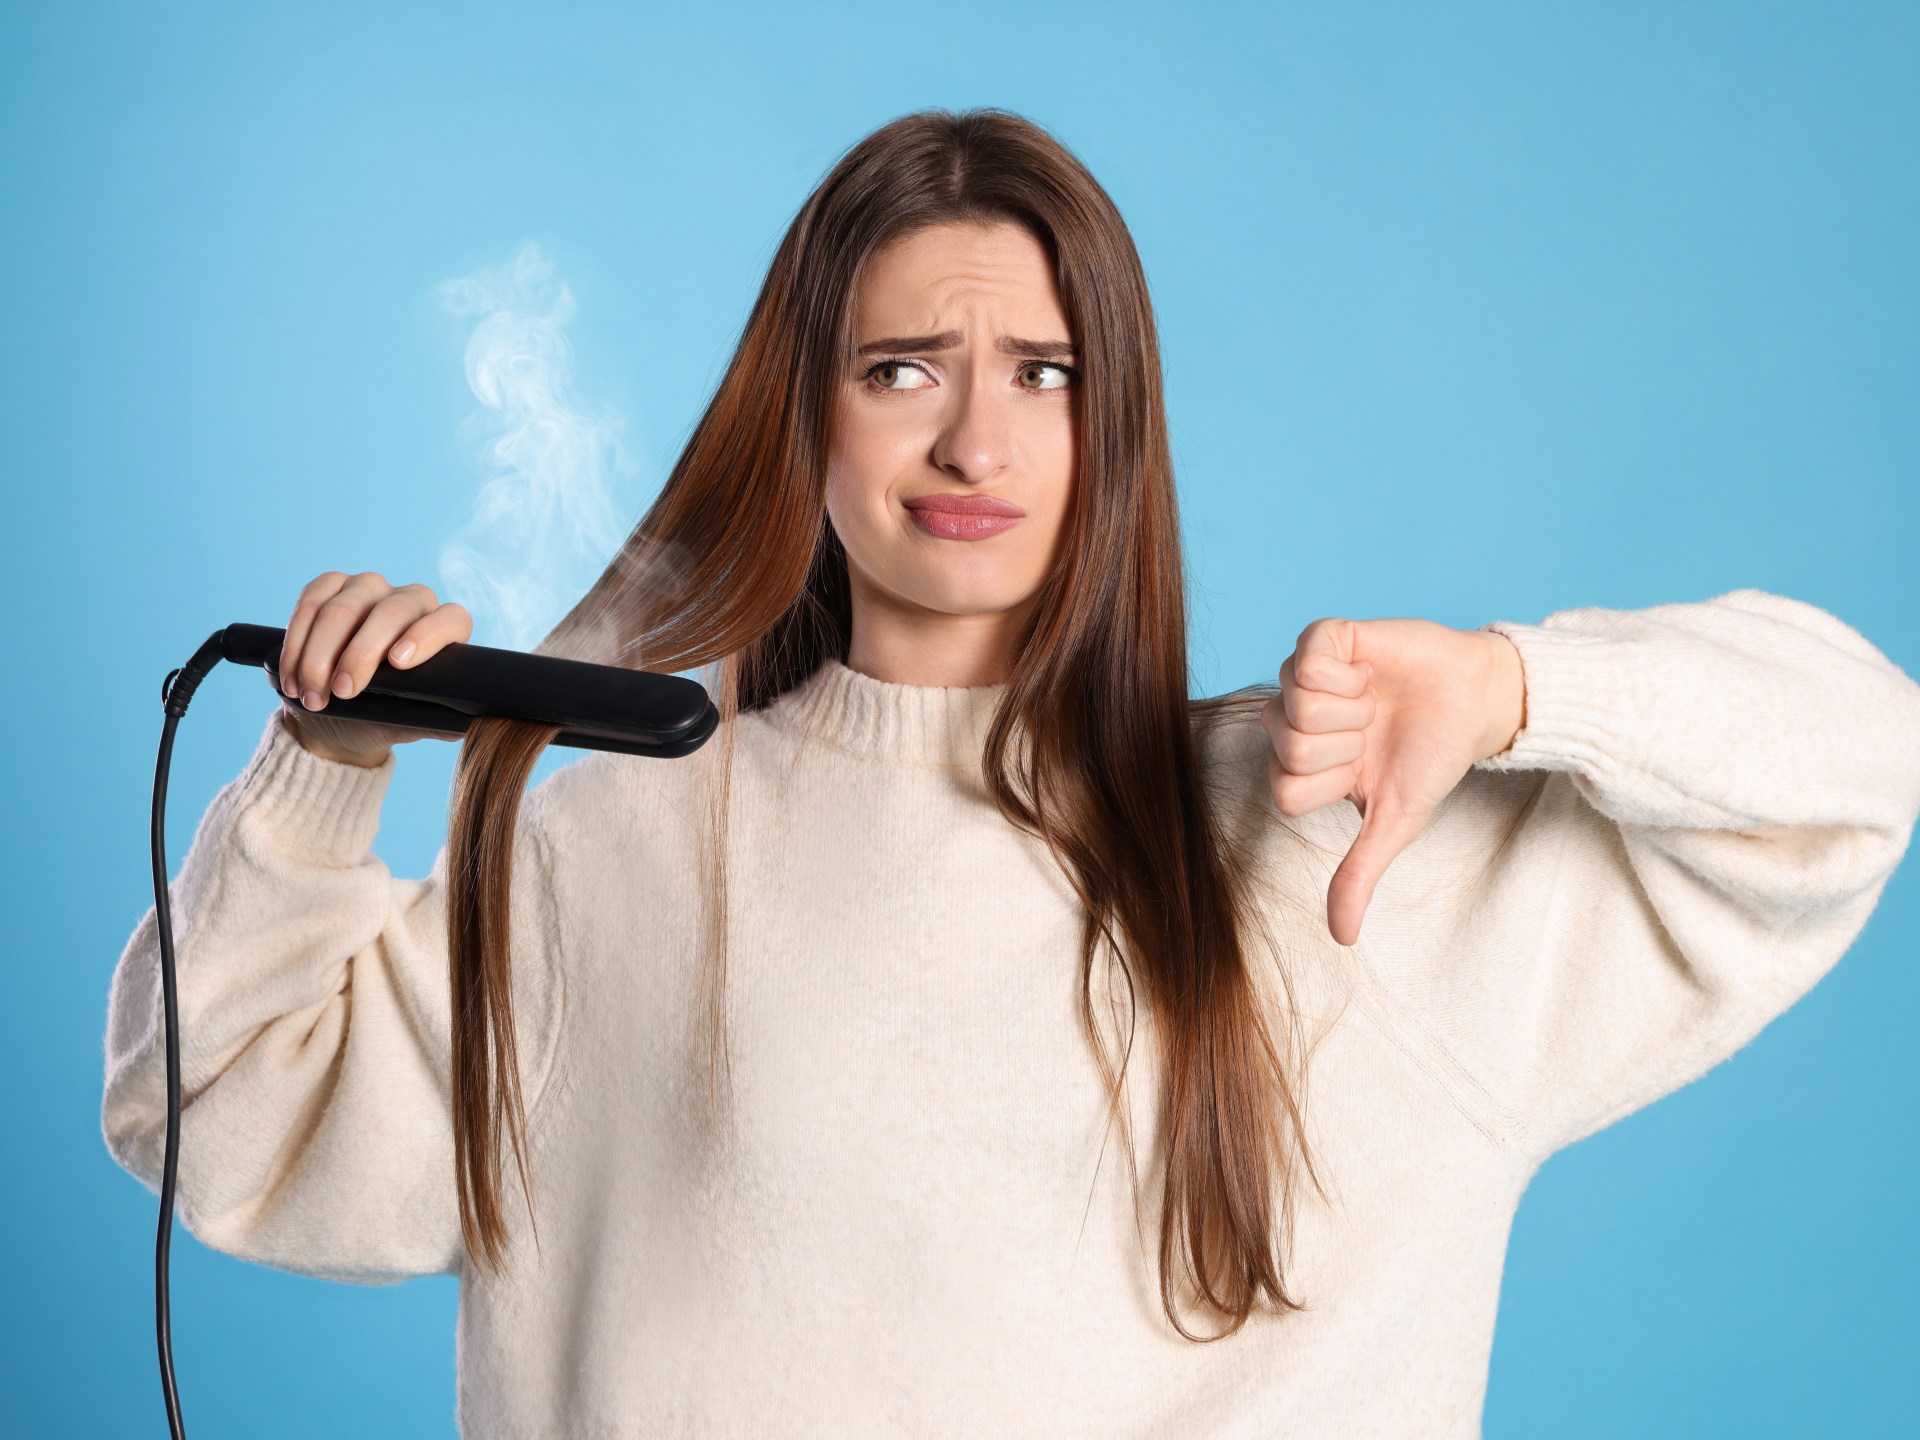 لماذا عليكِ التوقف عن دهن السليكون لحماية شعركِ من الحرارة؟ | مرأة – البوكس نيوز